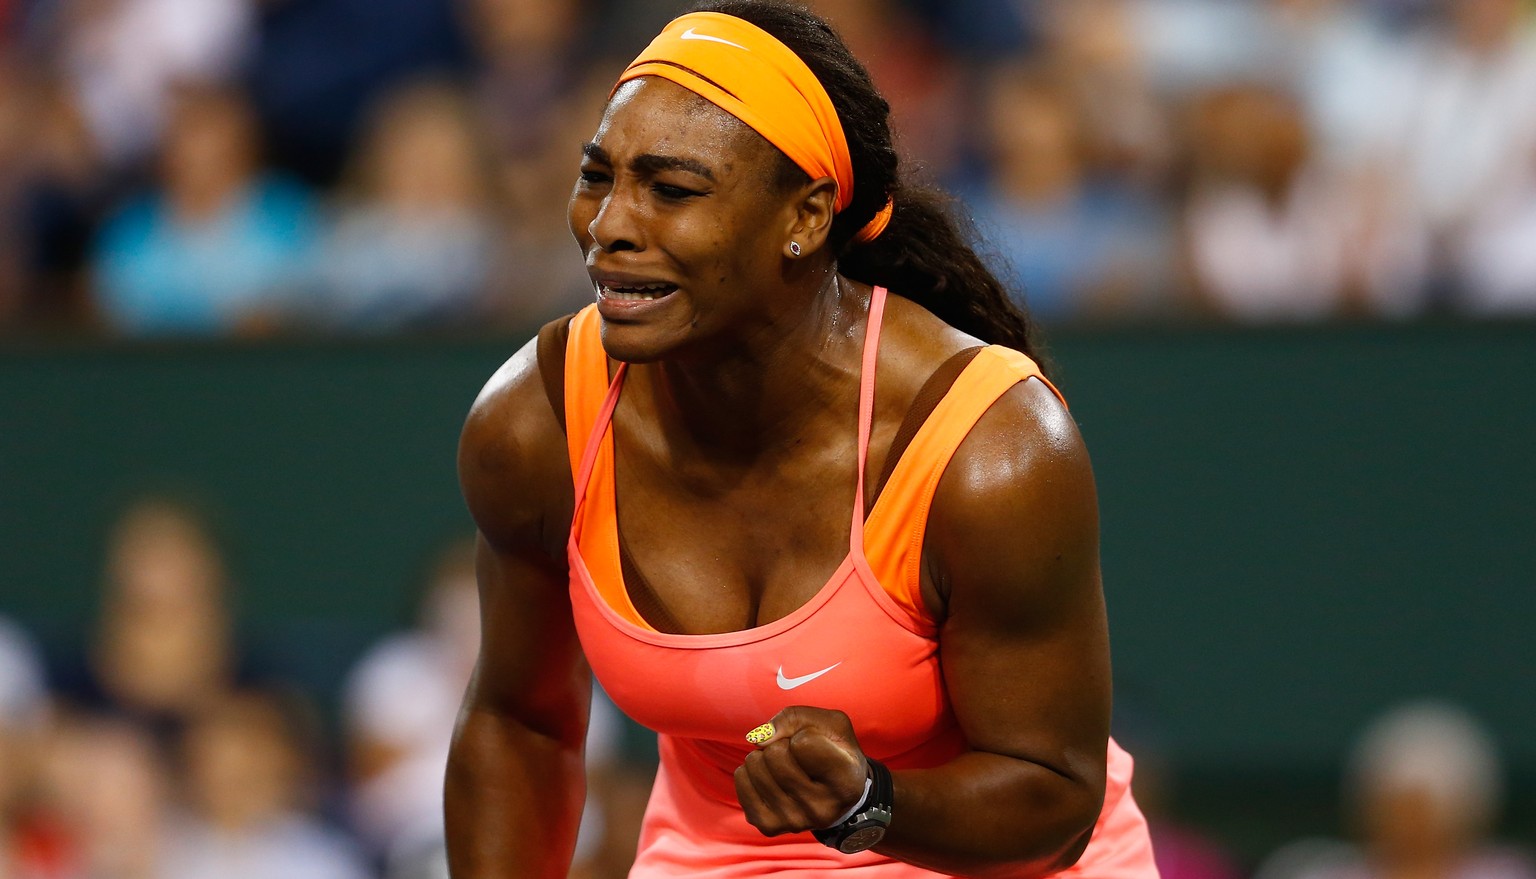 Serena Williams kämpft während der Partie mit den Tränen.